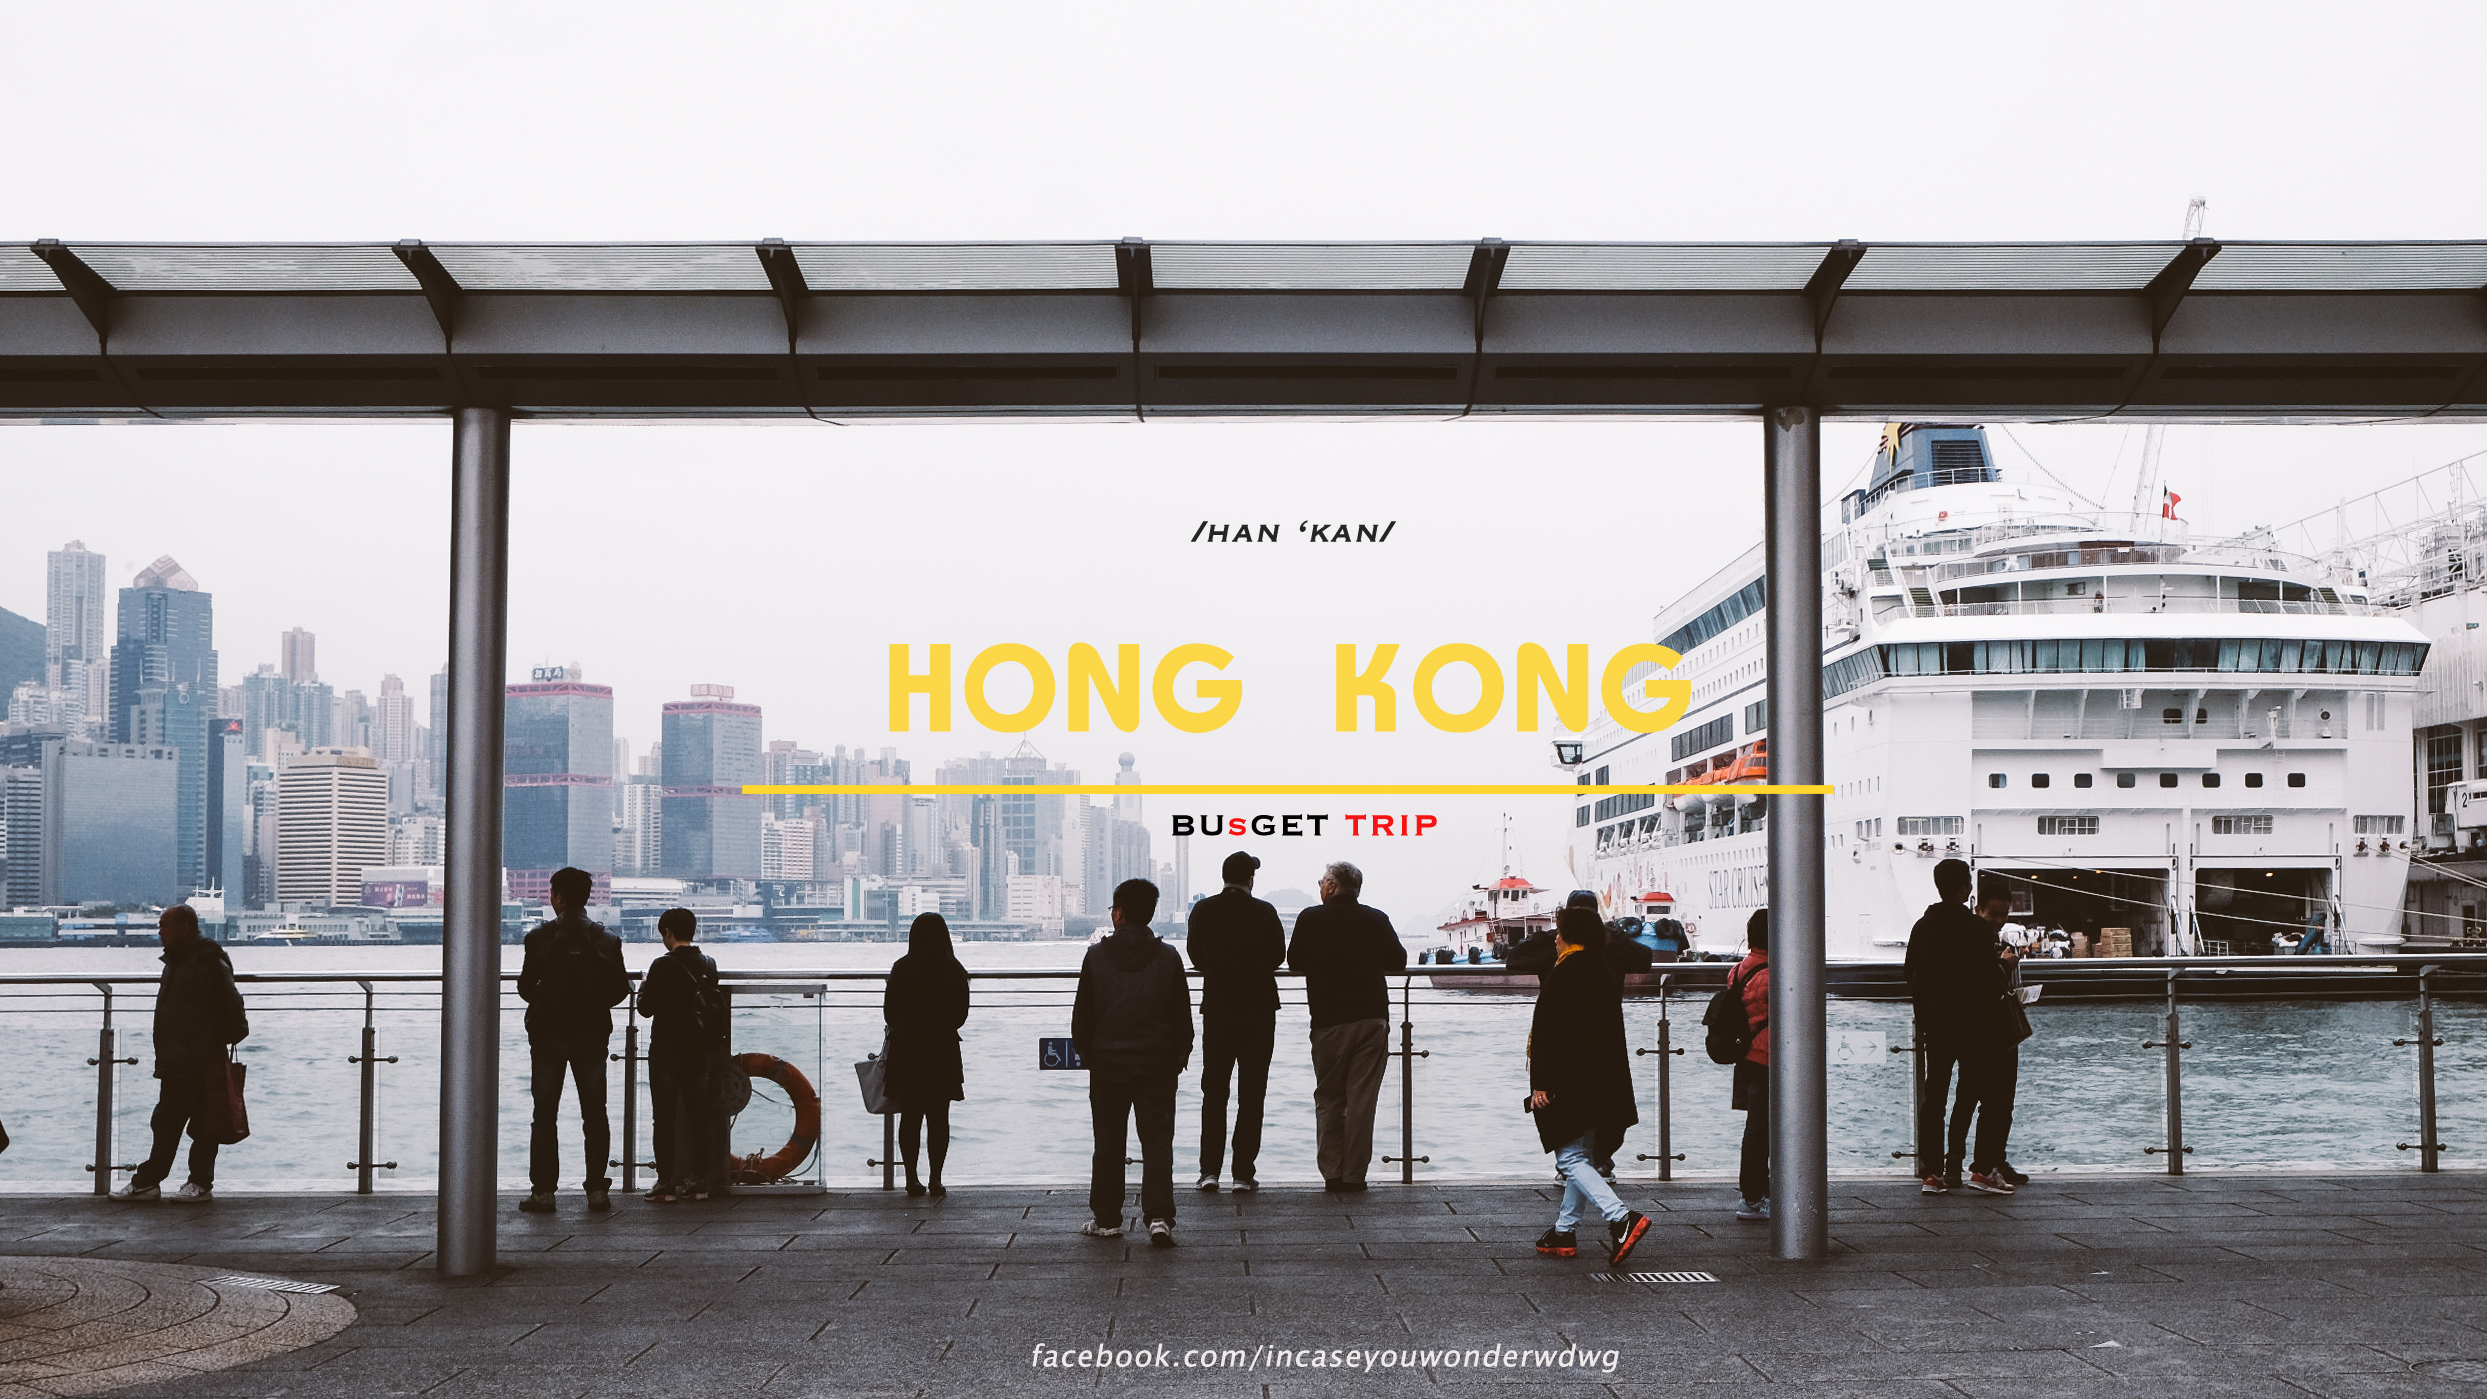 HONG KONG, BUSGET TRIP